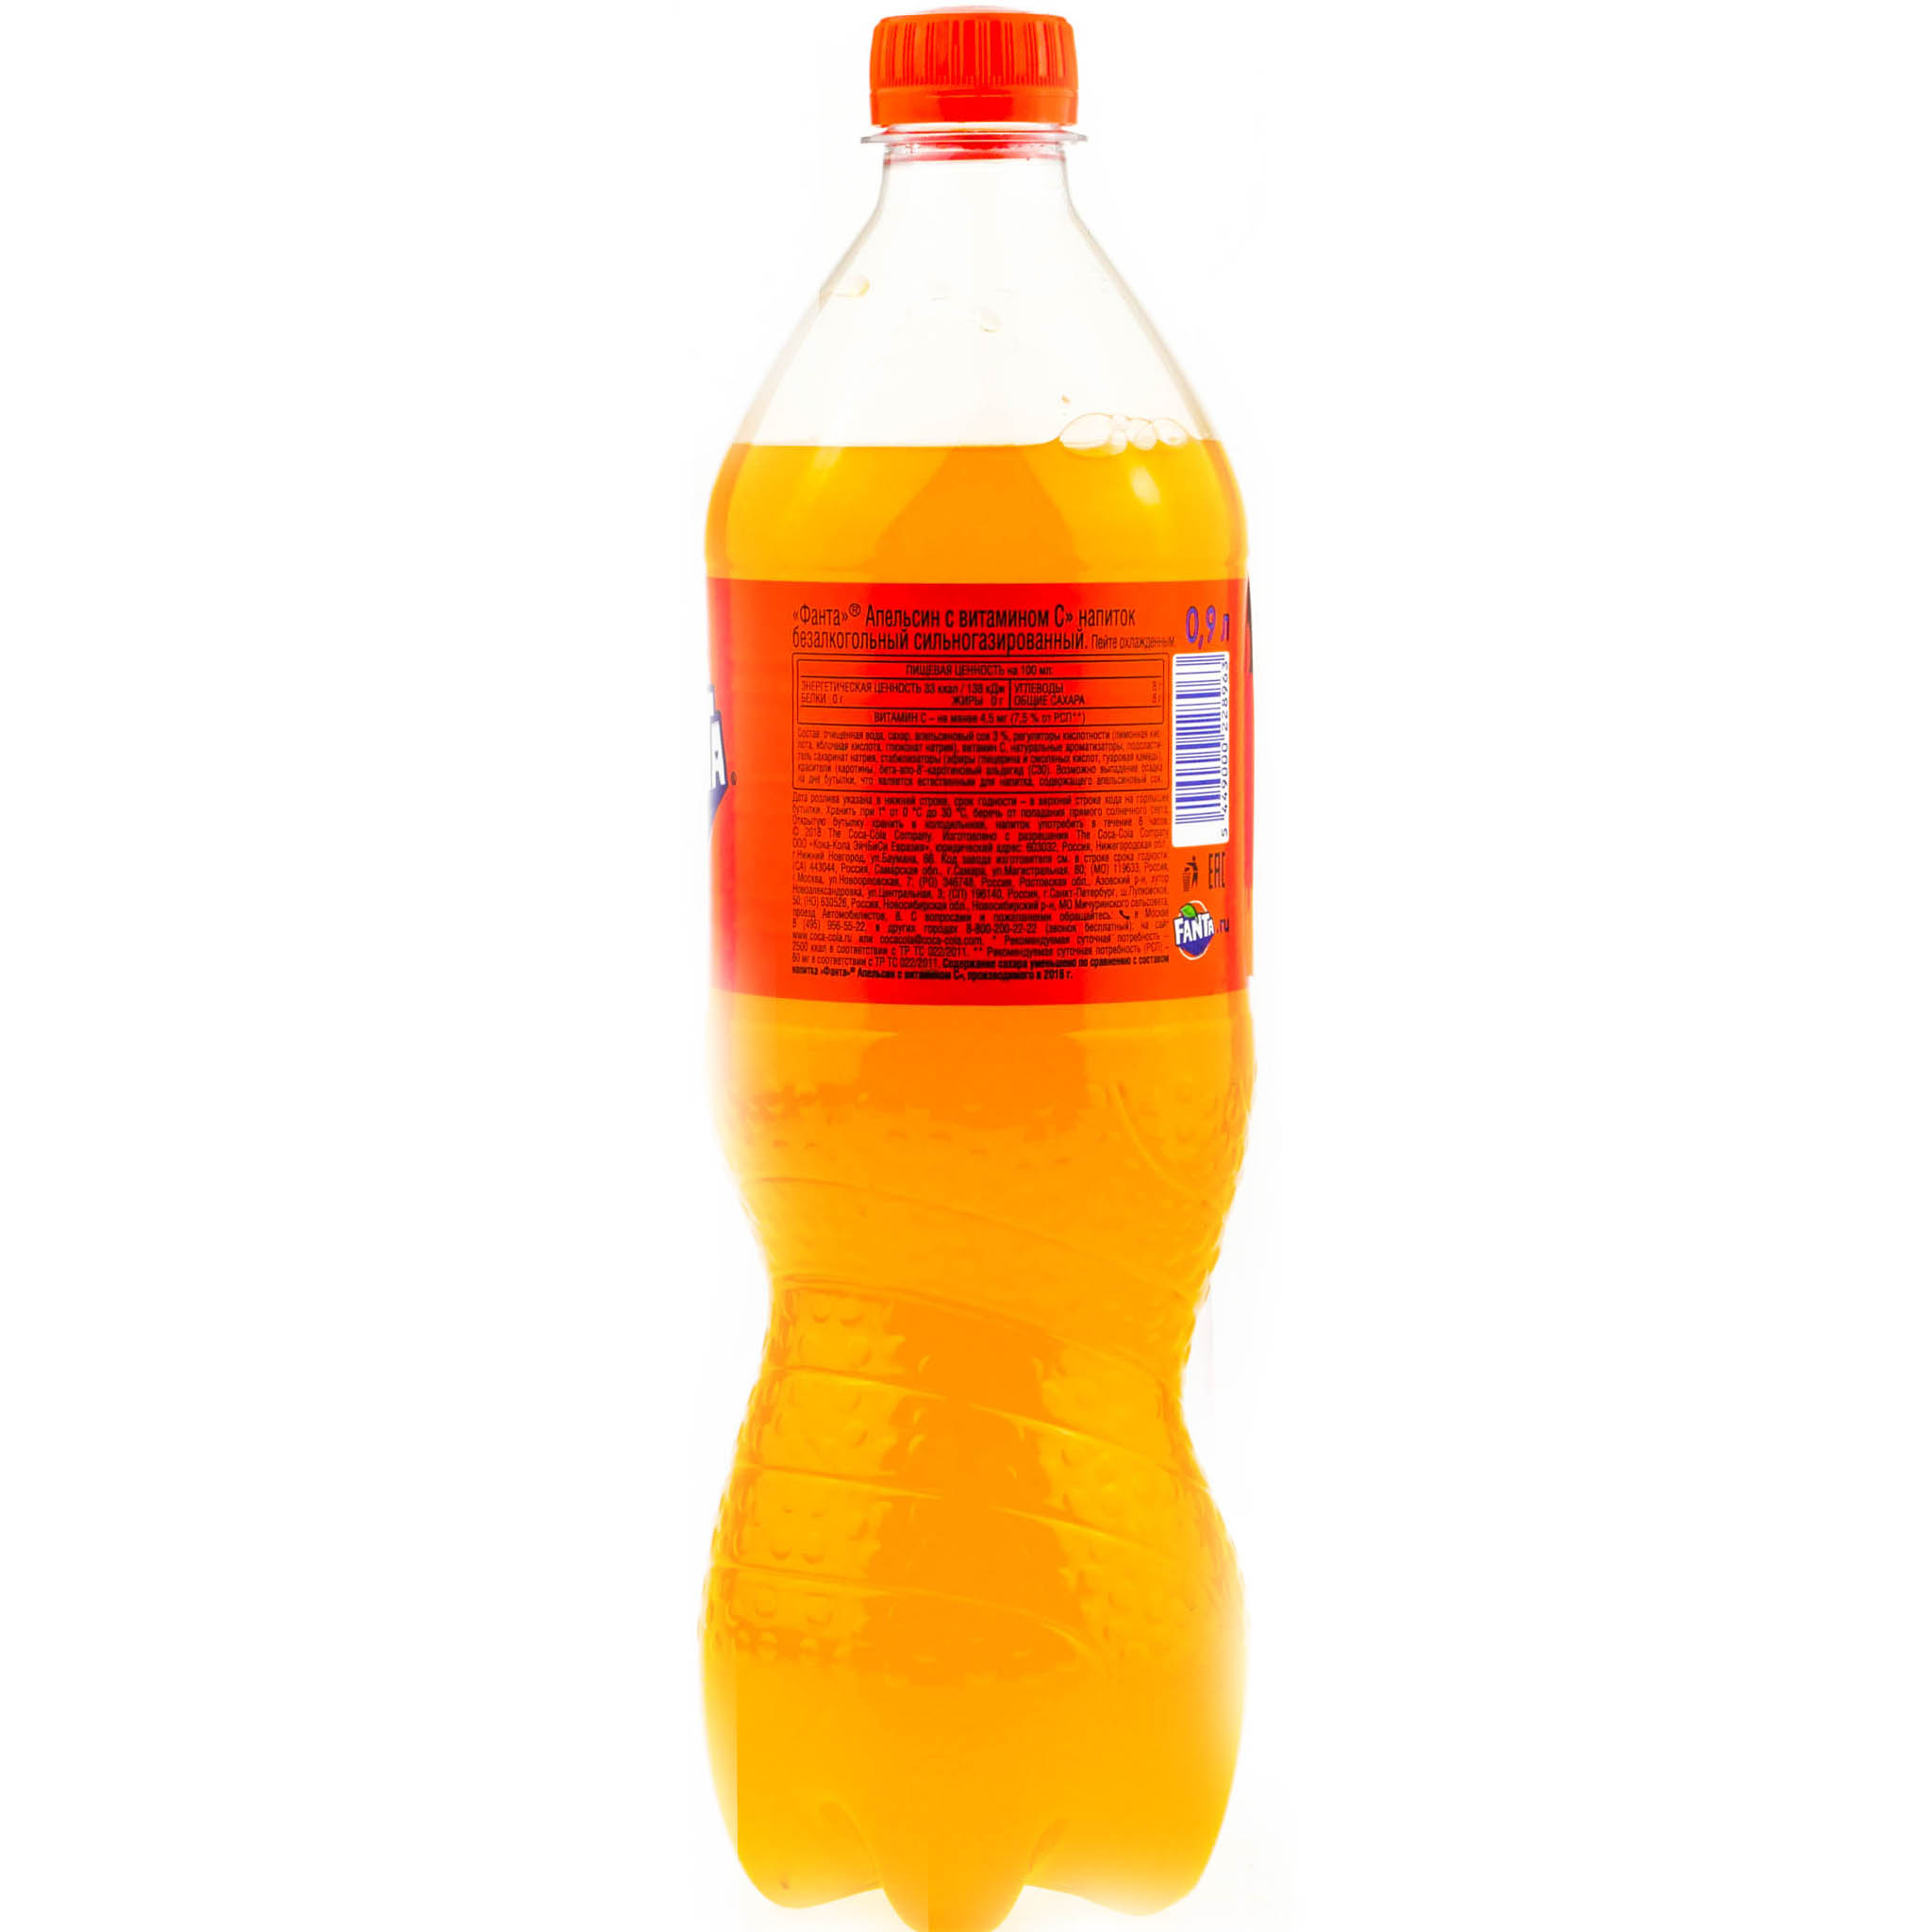 Апельсиновая газированная вода. Fanta апельсин 0.9л ПЭТ. Апельсиновая газировка Увинская Жемчужина. Напиток ГАЗ Фанта апельсин 0,9л. Фанта 0.9л.